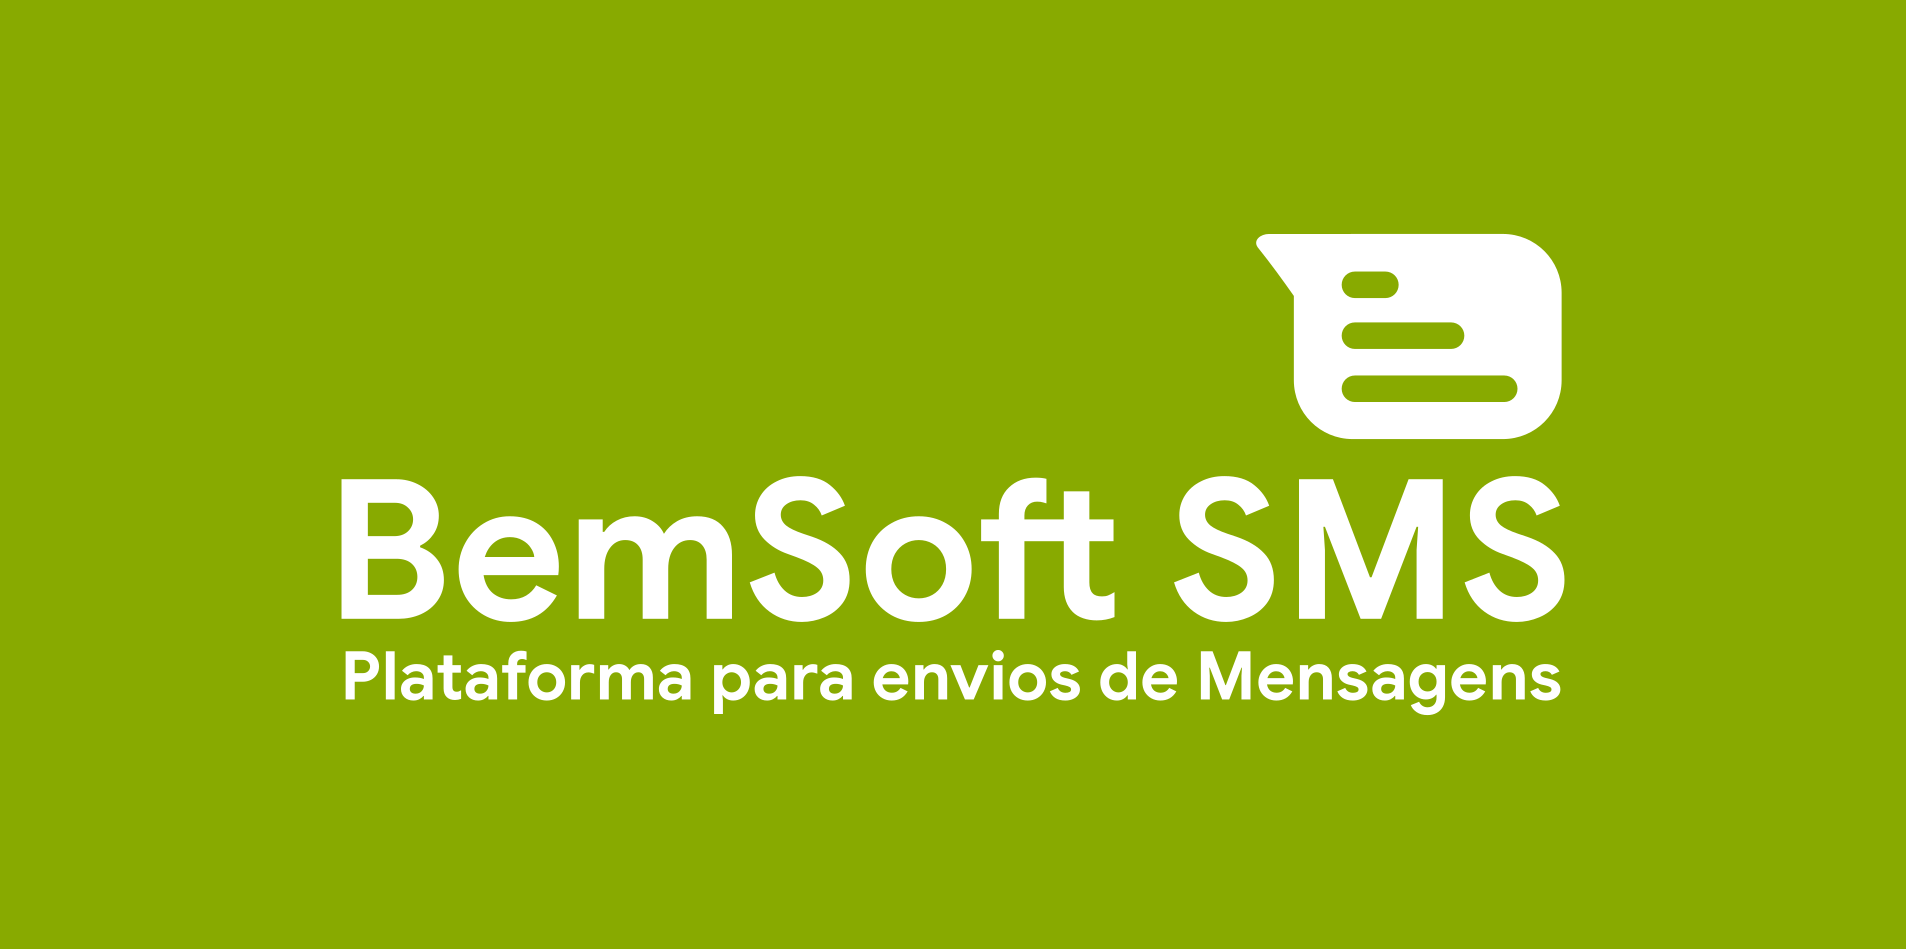 BemSoft SMS